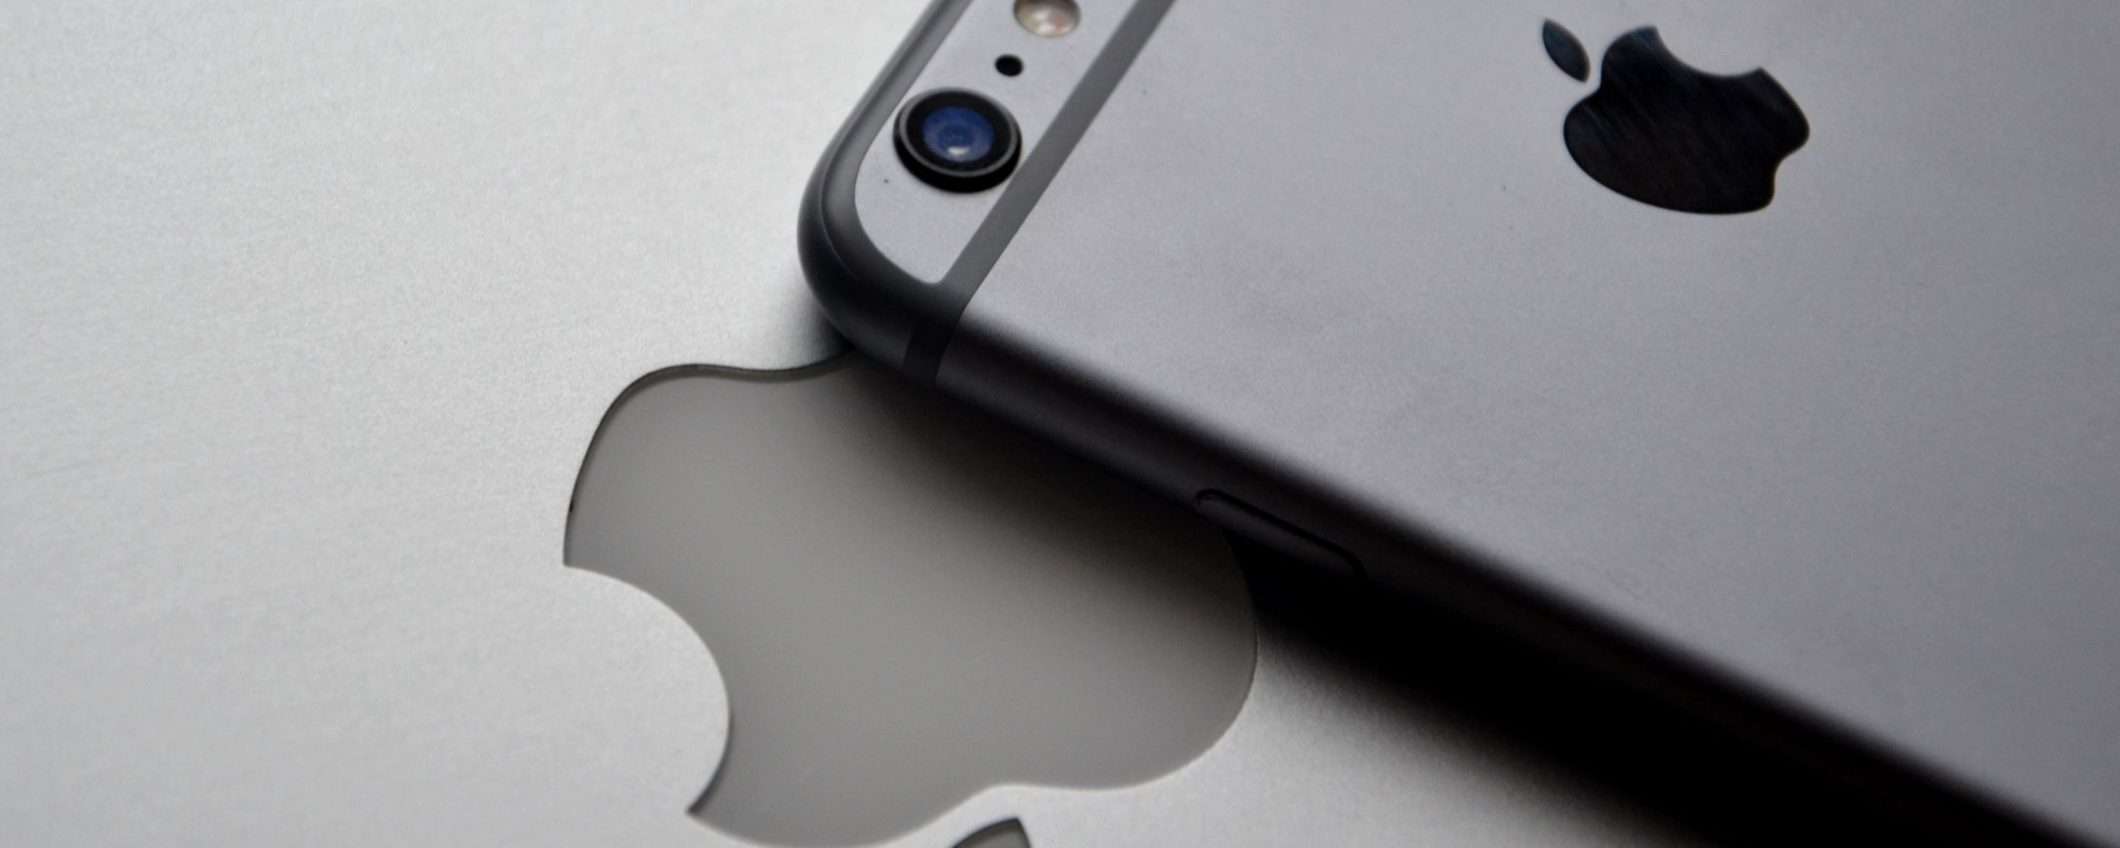 Apple rilascia iOS 12.5.5 per risolvere una zero-day